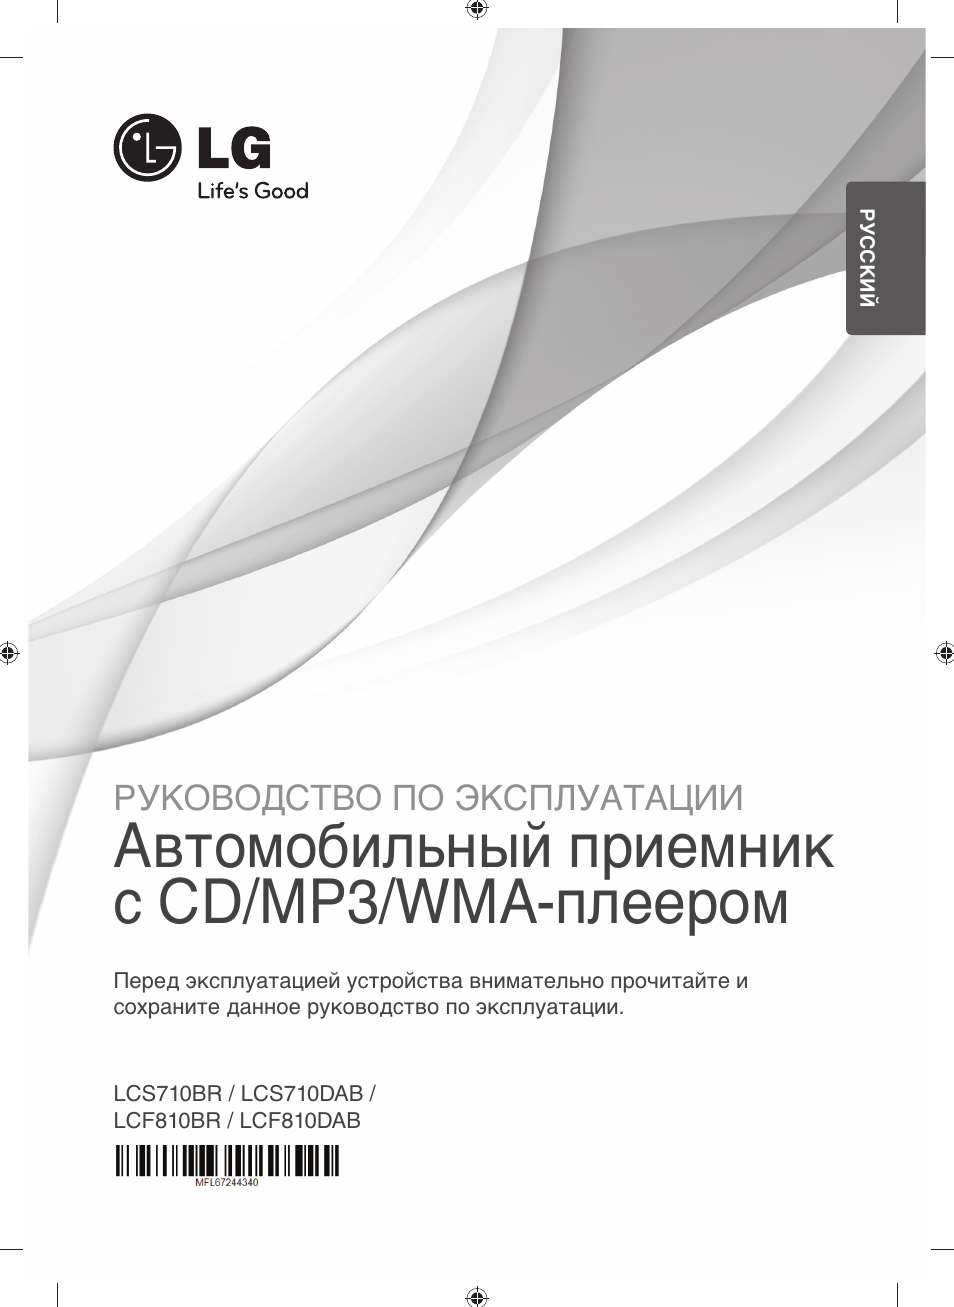 Инструкция по эксплуатации LG LCS710BR | 33 страницы